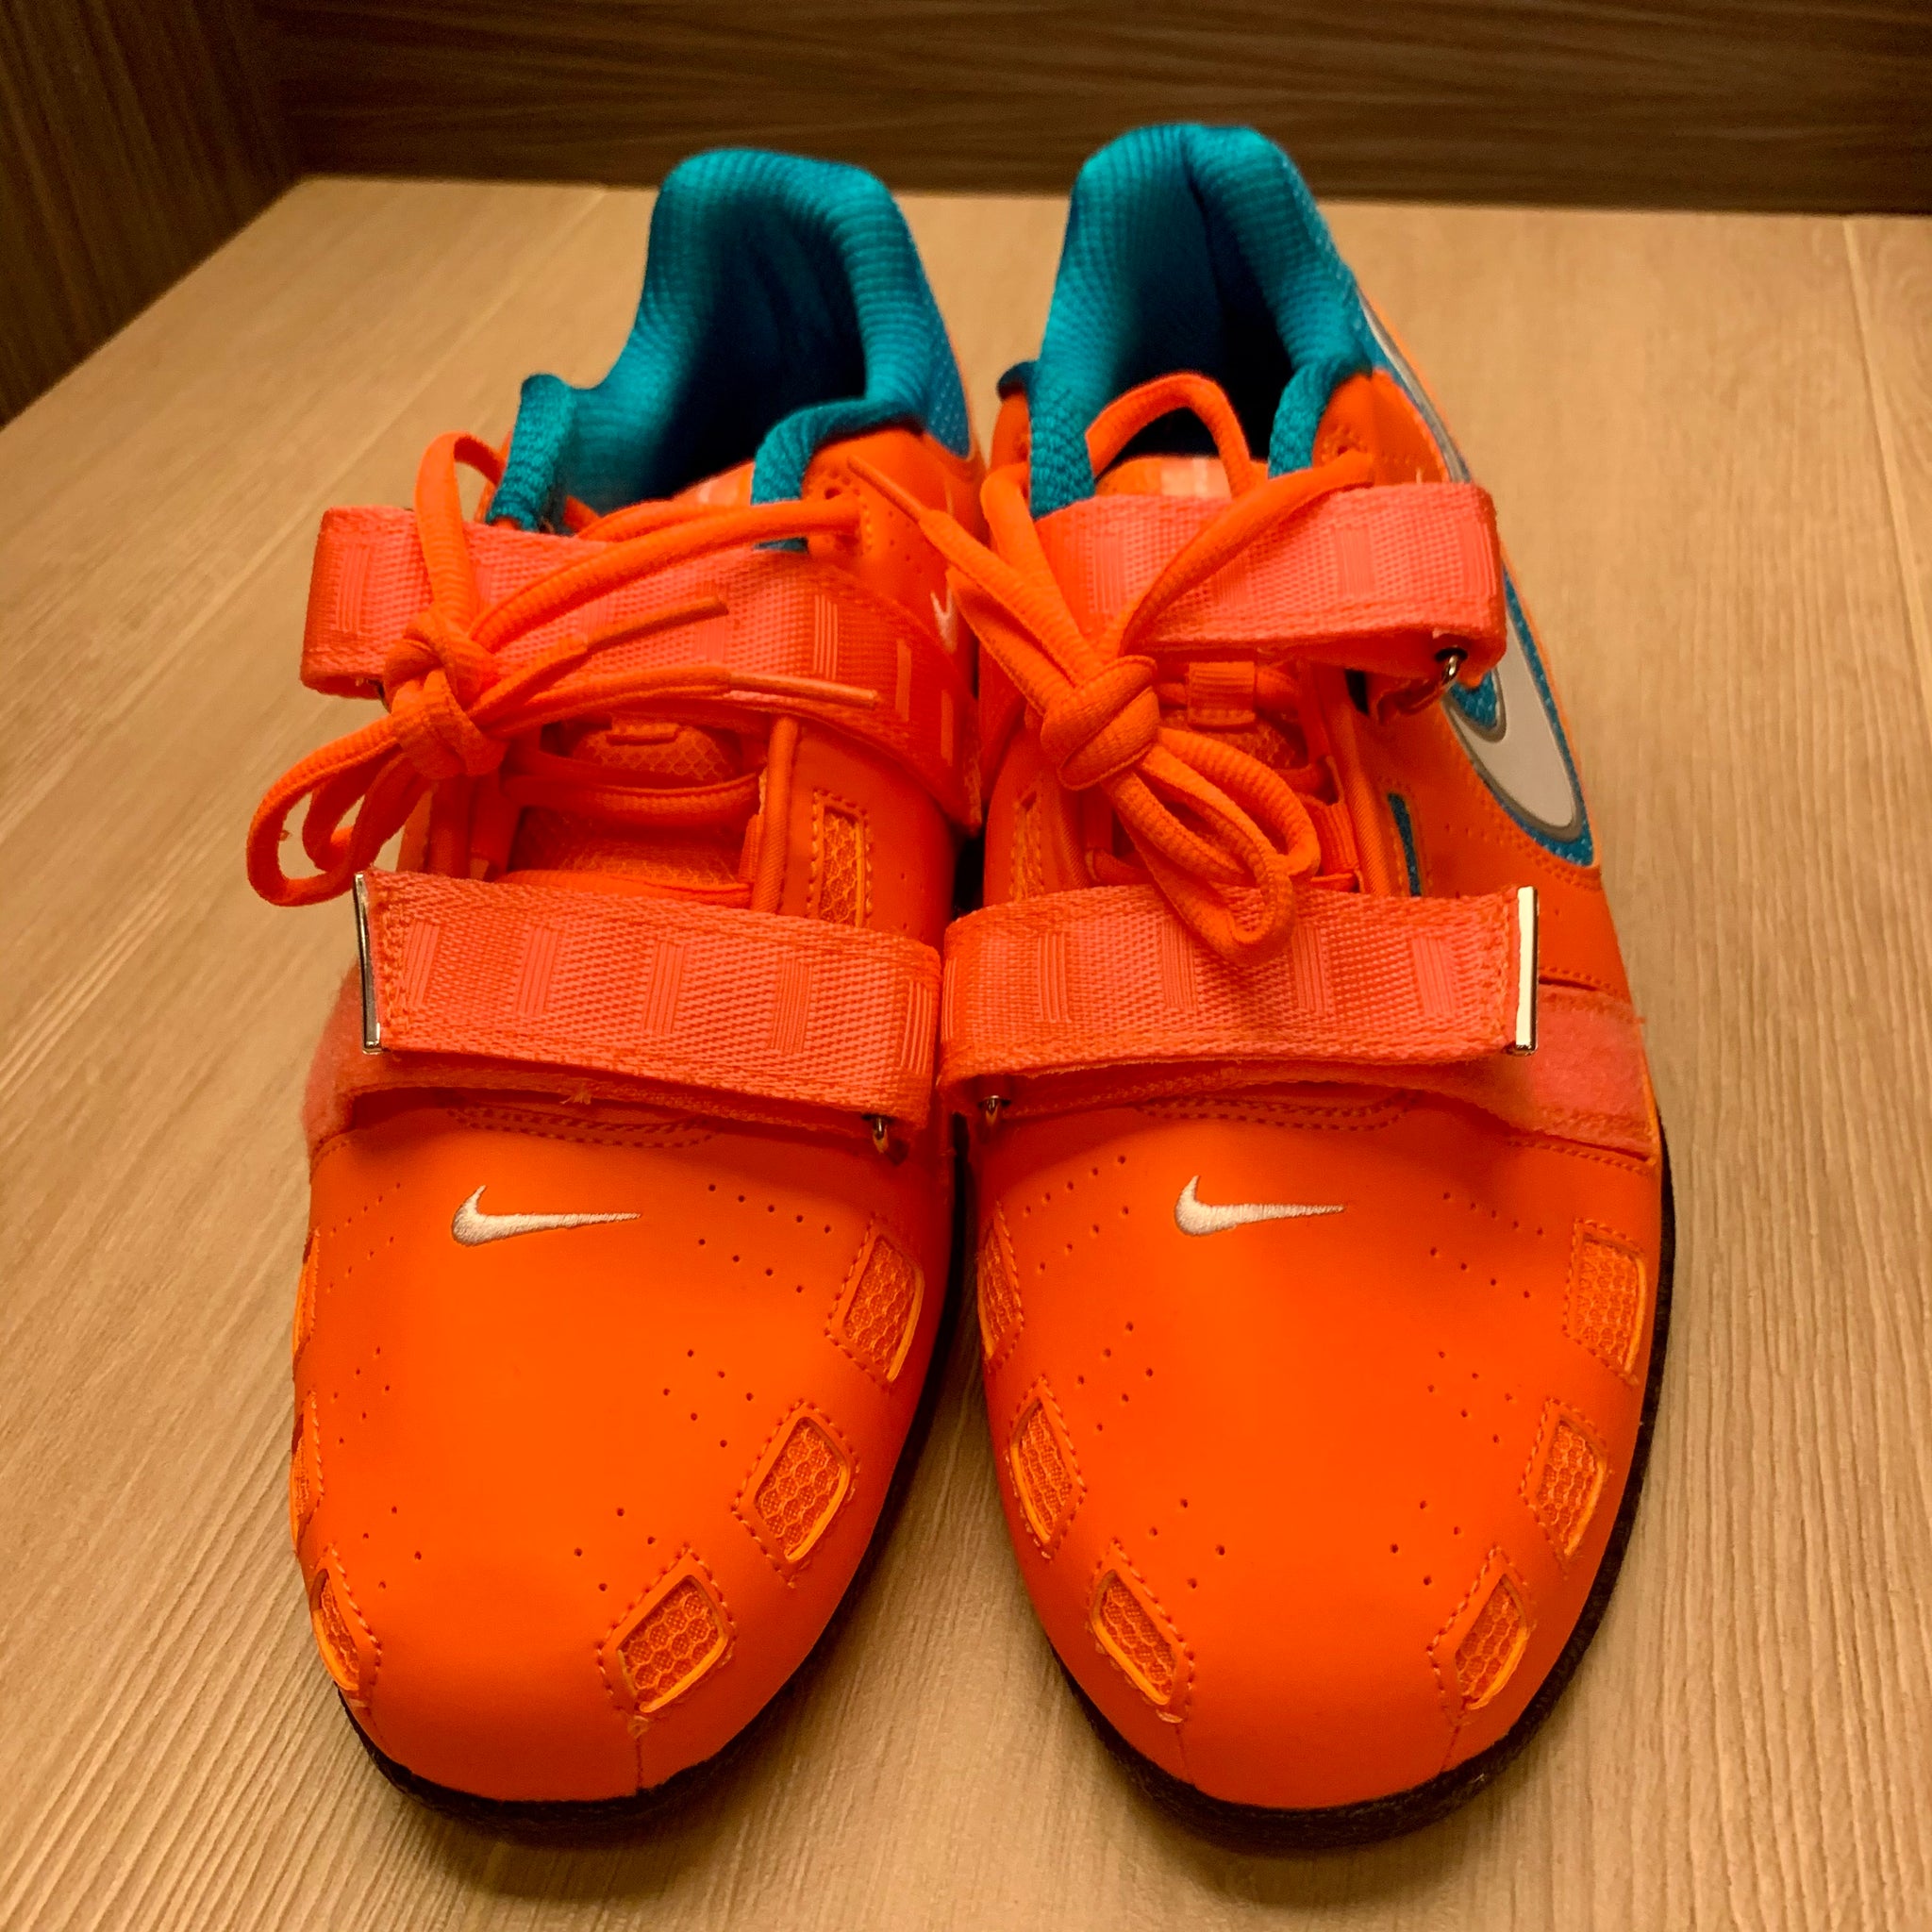 Nike Romaleos 2 - Orange/Blue US10 (New 